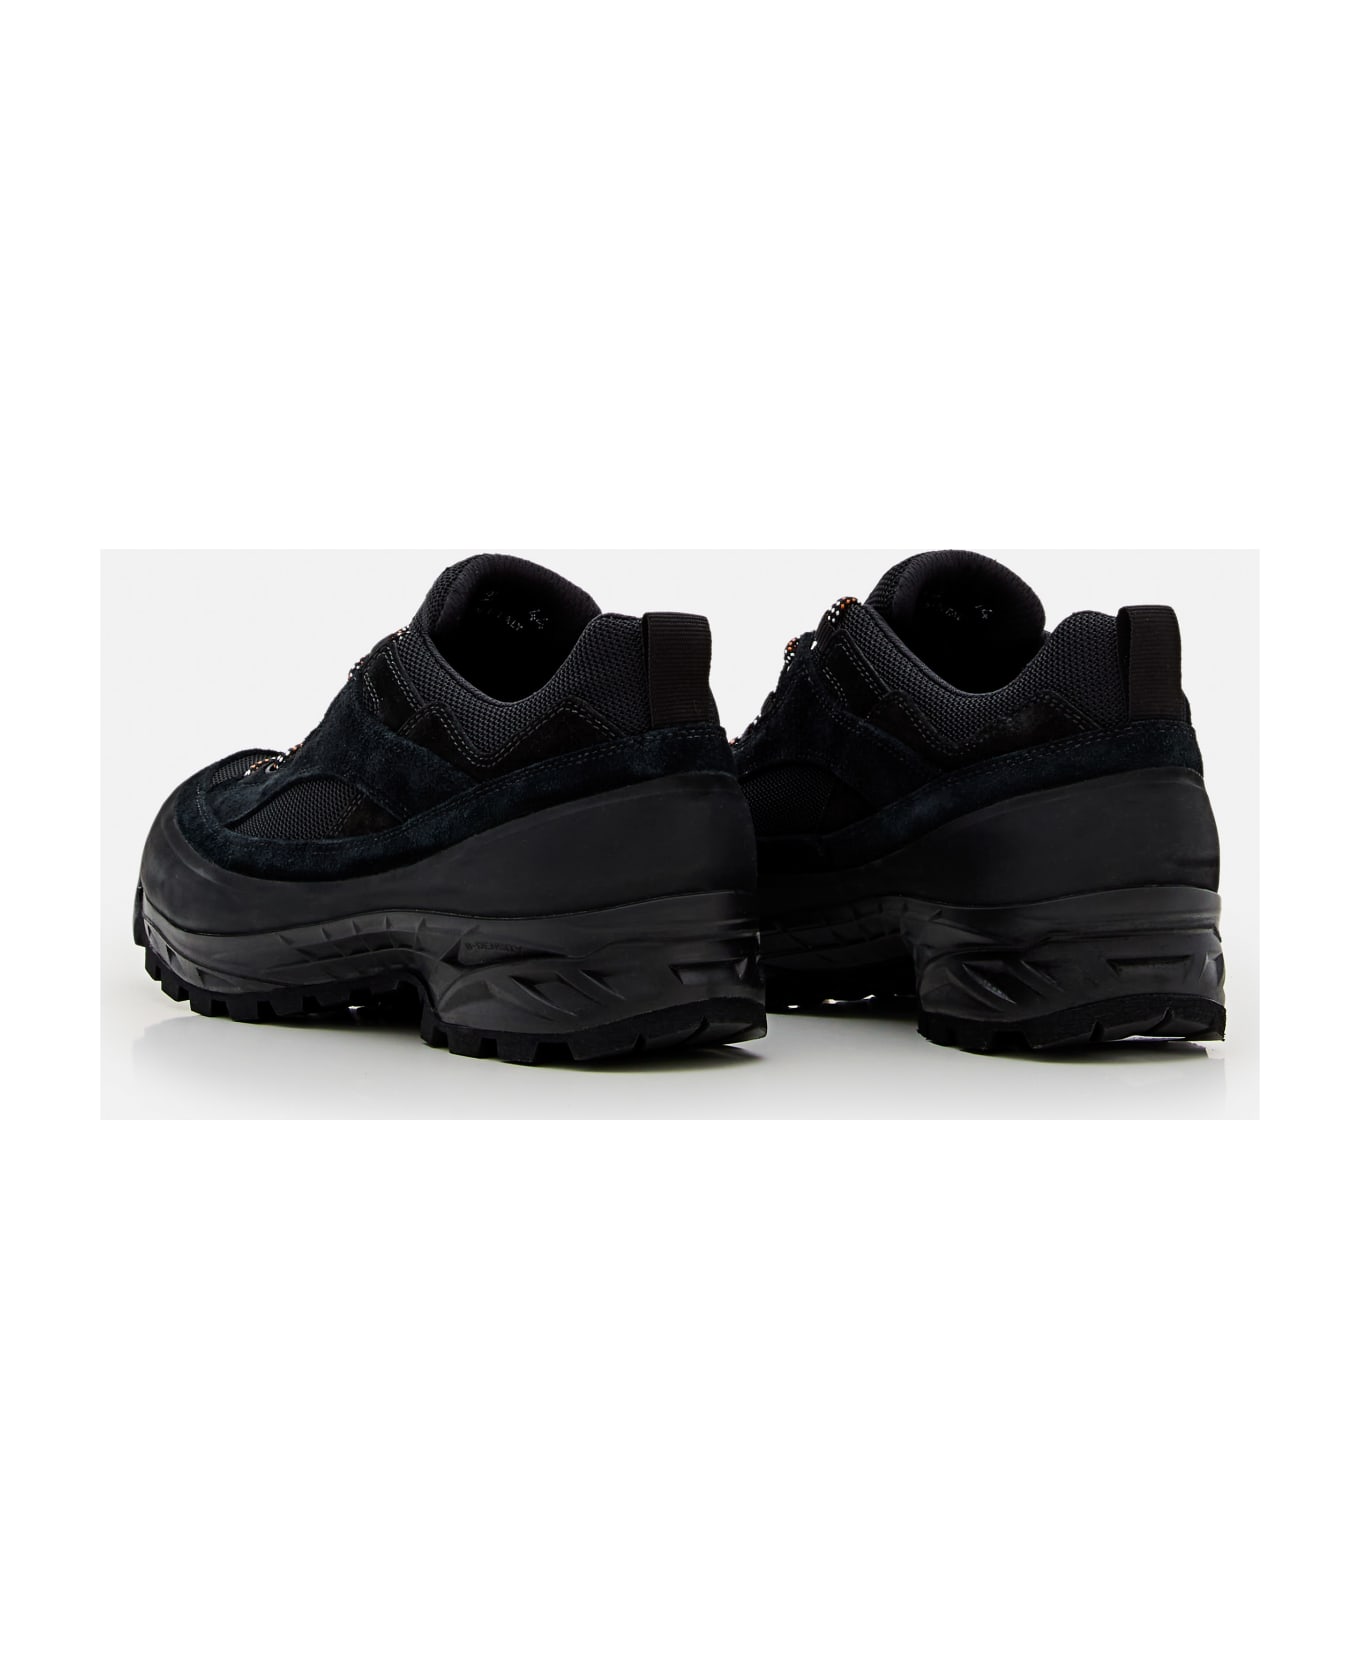 Diemme Grappa Hiker Sneakers - Black